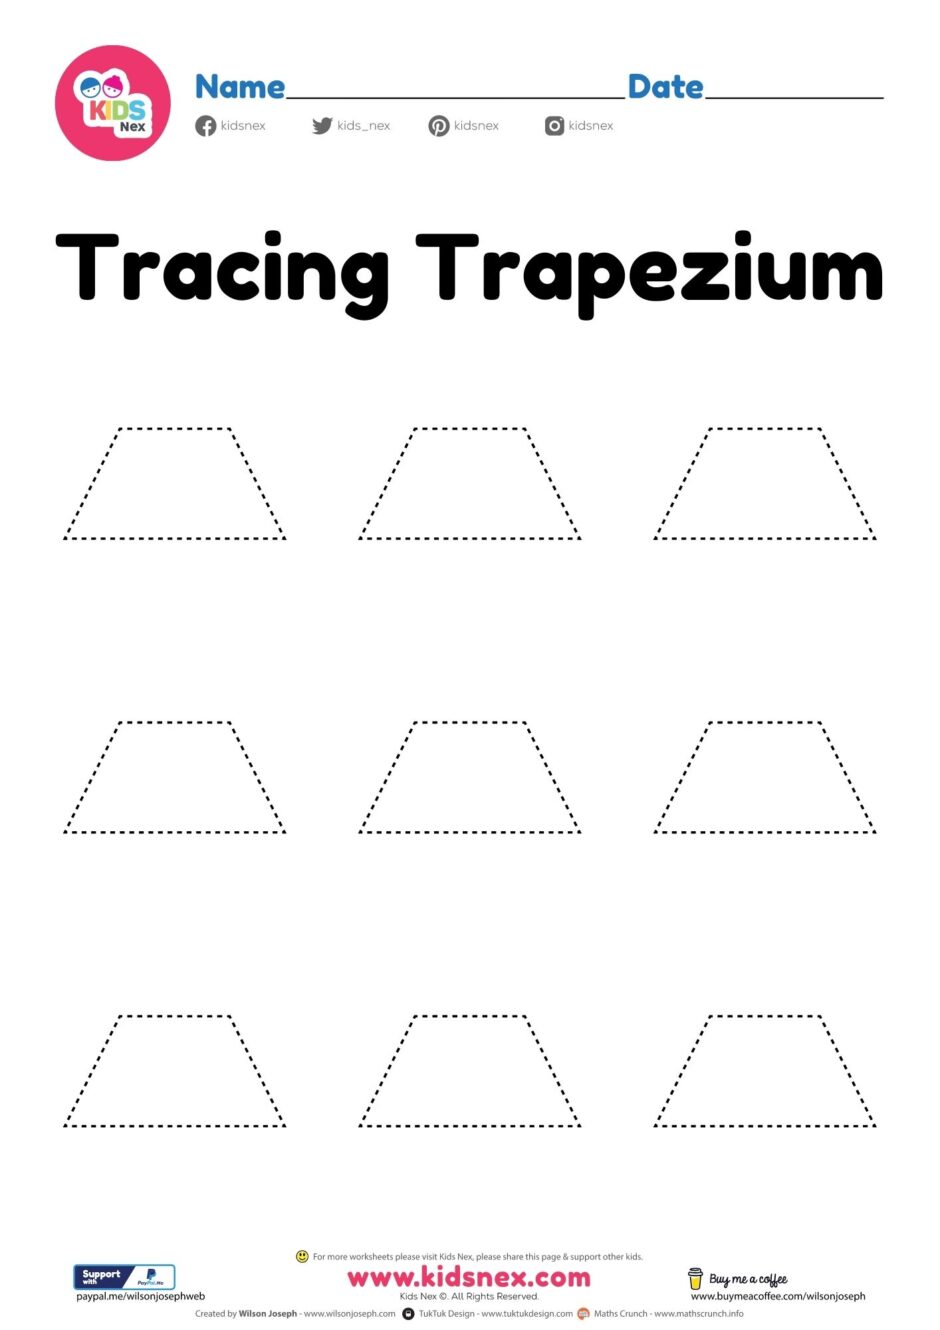 trapezium-shape-worksheet-free-printable-pdf-for-preschool